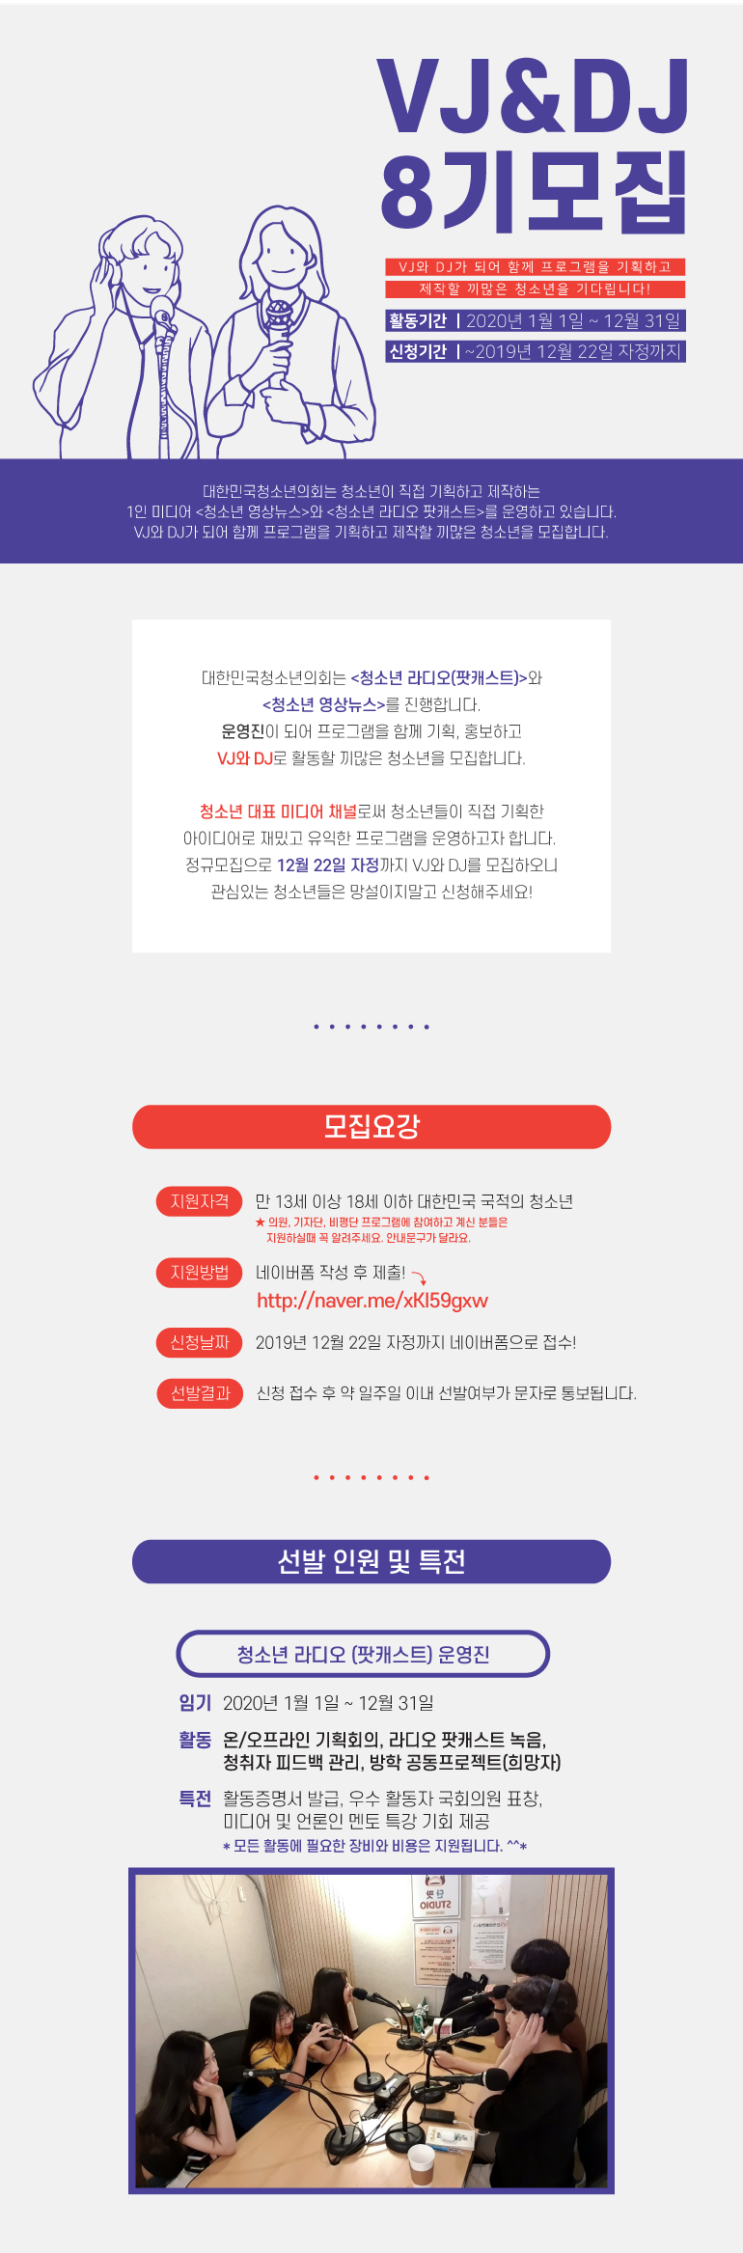 2020년 겨울방학 공지 ③ 청소년 영상뉴스(DJ) & 청소년 라디오(VJ) 8기 모집